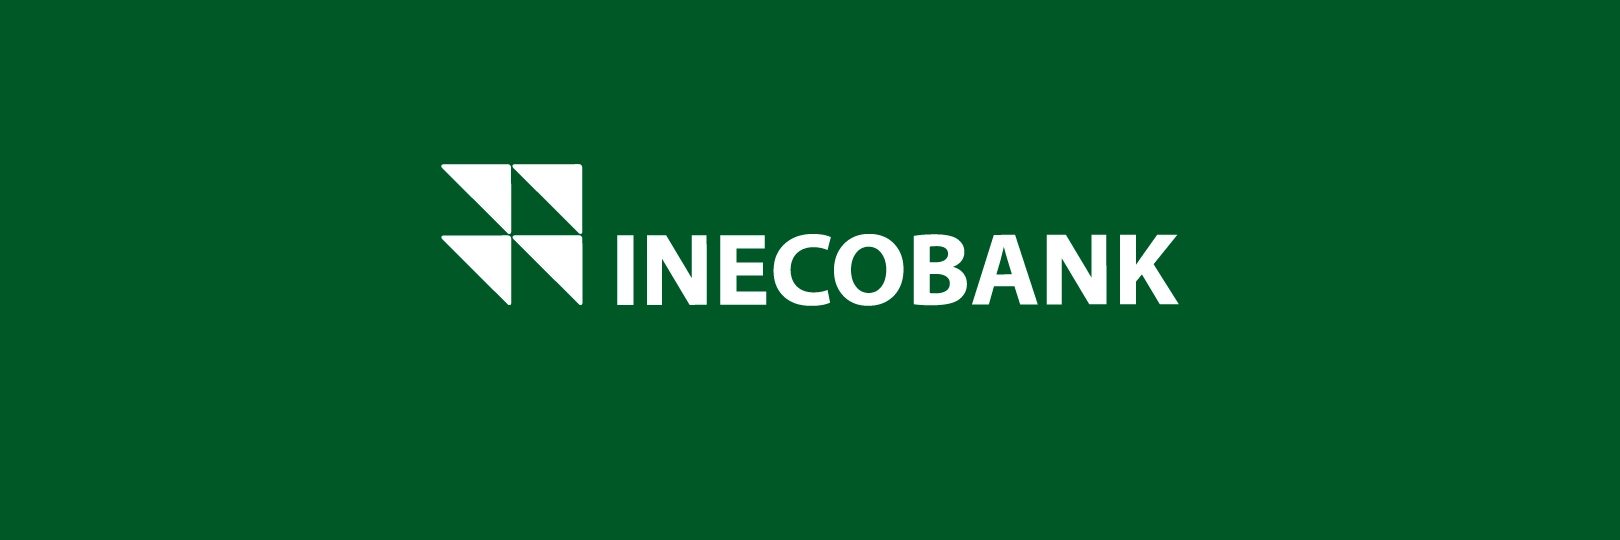 52-inecobank-indigo-01.png